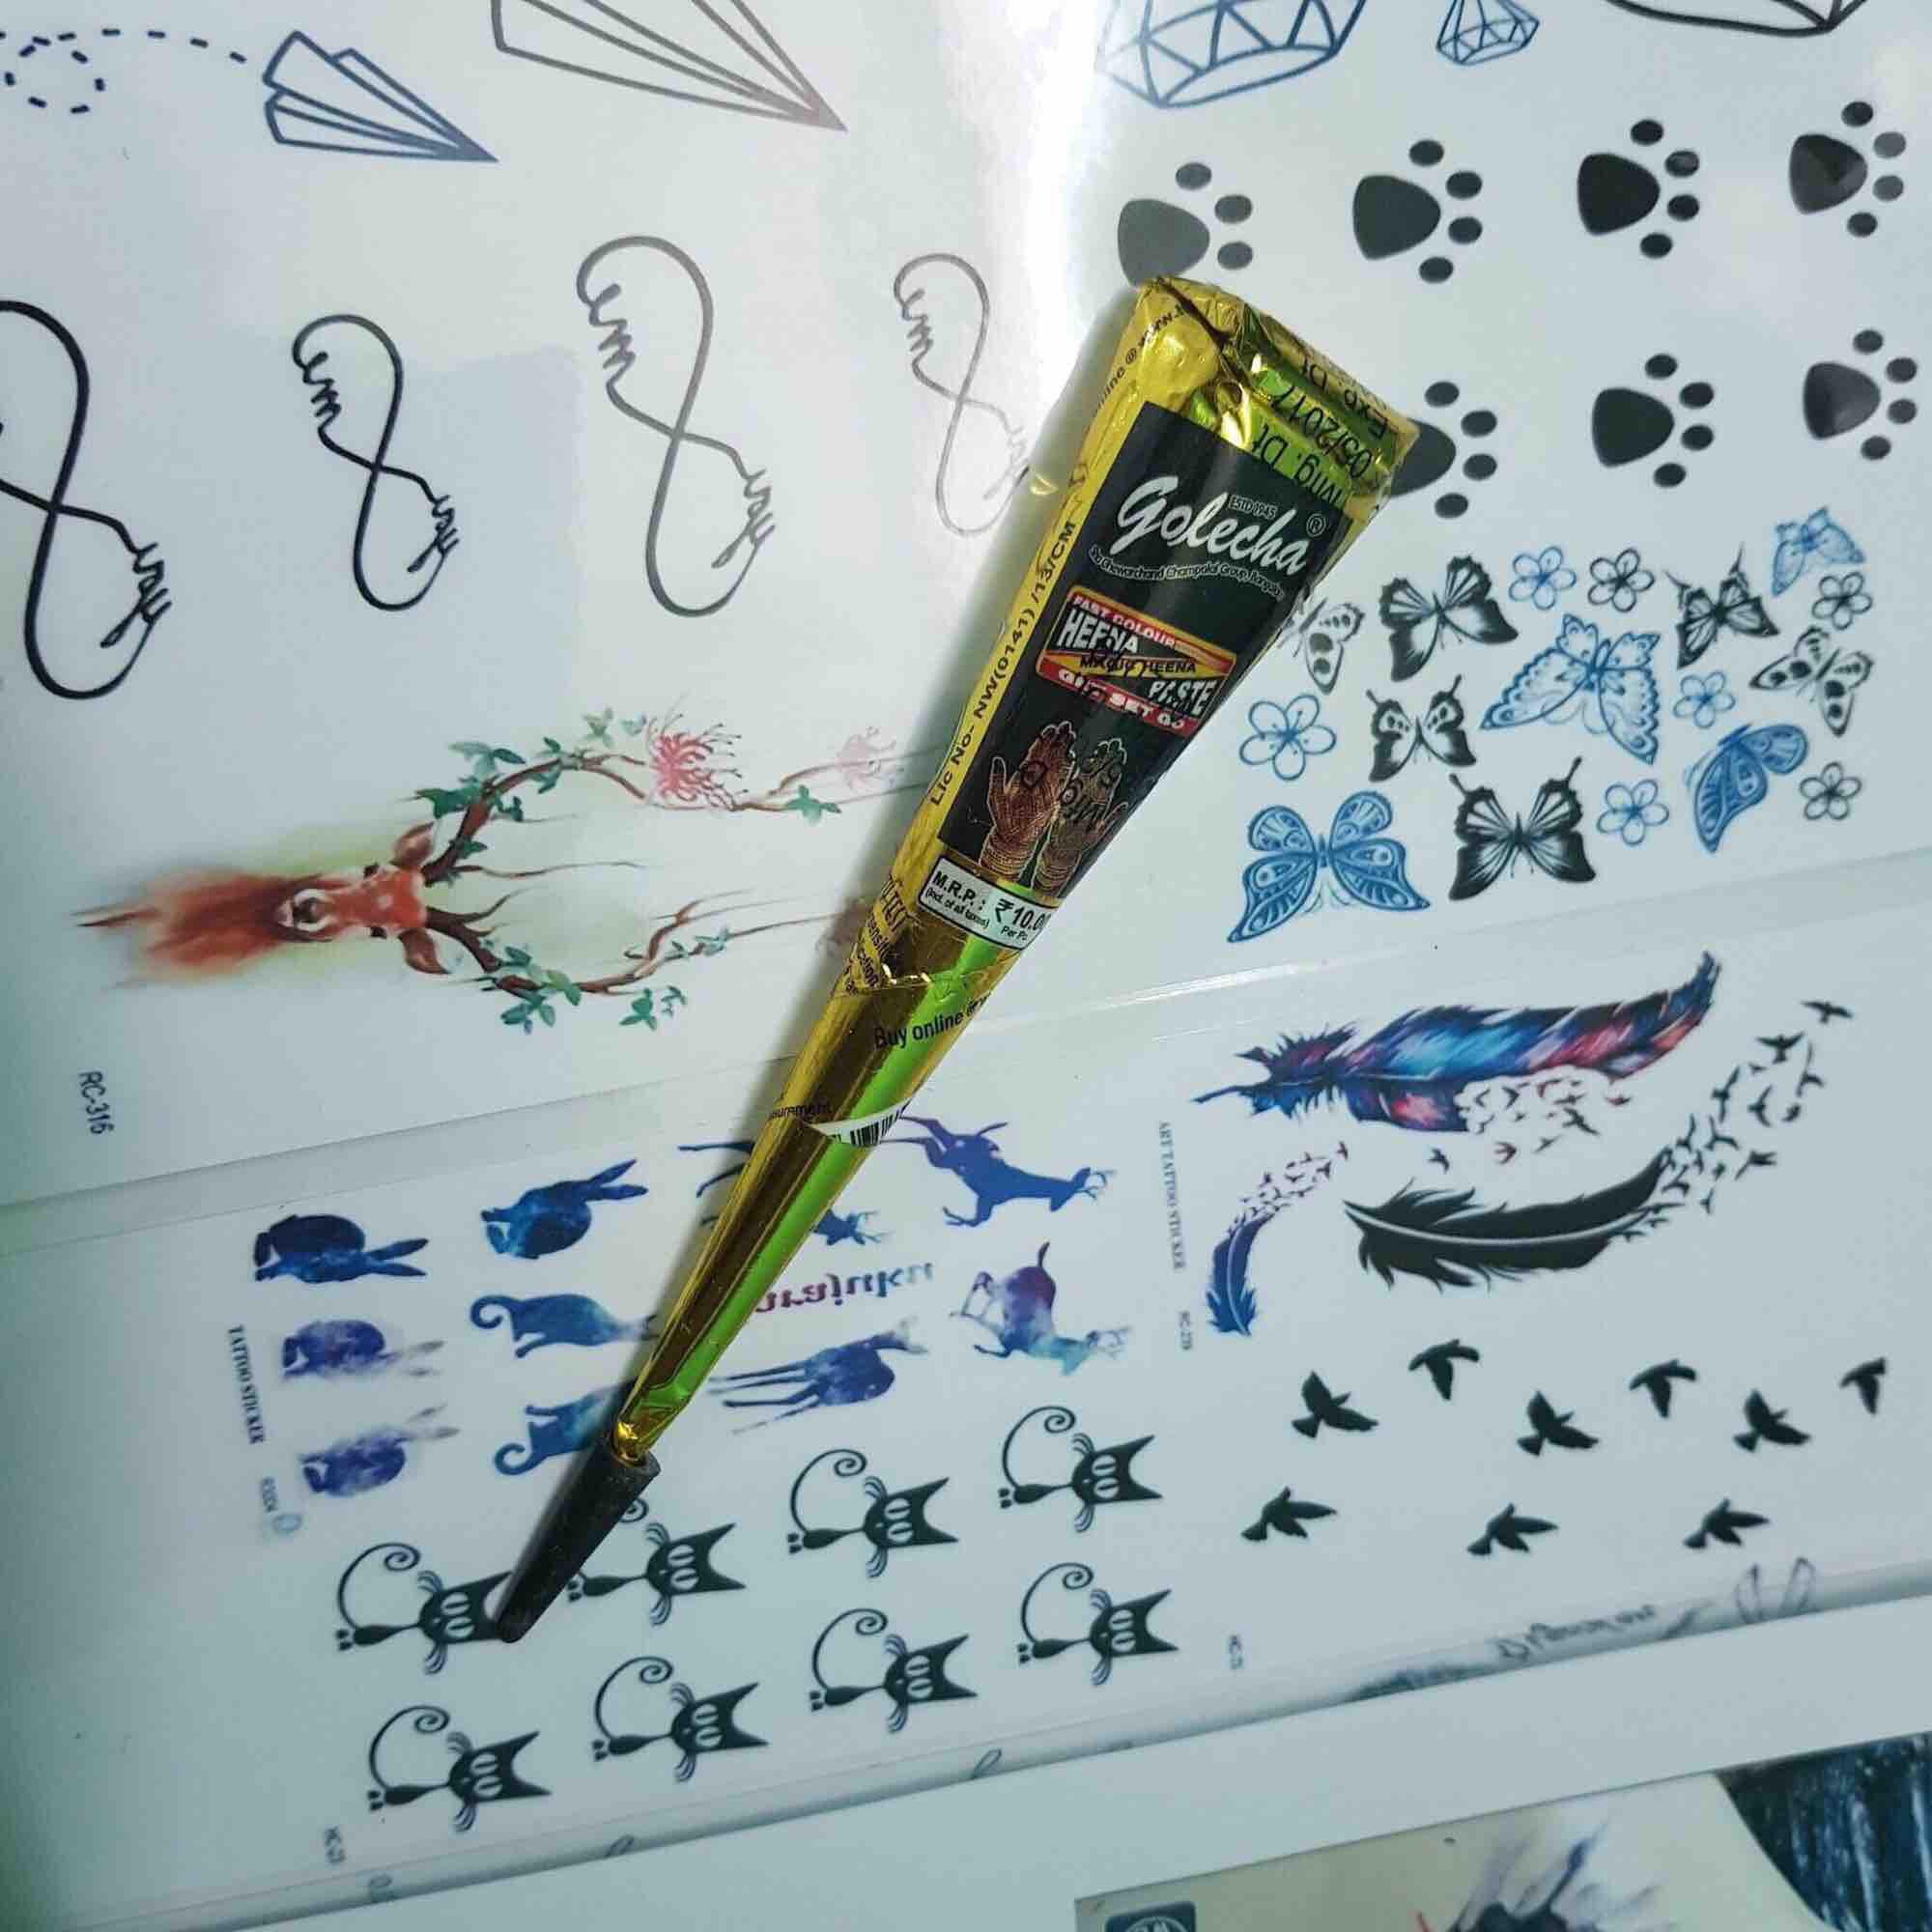 Bút vẽ henna đen (Black Henna Pen) - Bạn yêu thích hình xăm henna nhưng không có đủ thời gian hoặc kiến thức để vẽ? Không vấn đề gì! Bút vẽ henna đen sẽ giúp bạn vẽ được các mẫu họa tiết yêu thích một cách dễ dàng và chuyên nghiệp. Với chất liệu tự nhiên và không gây kích ứng, bạn hoàn toàn có thể tự tay trang trí cơ thể mình một cách an toàn.